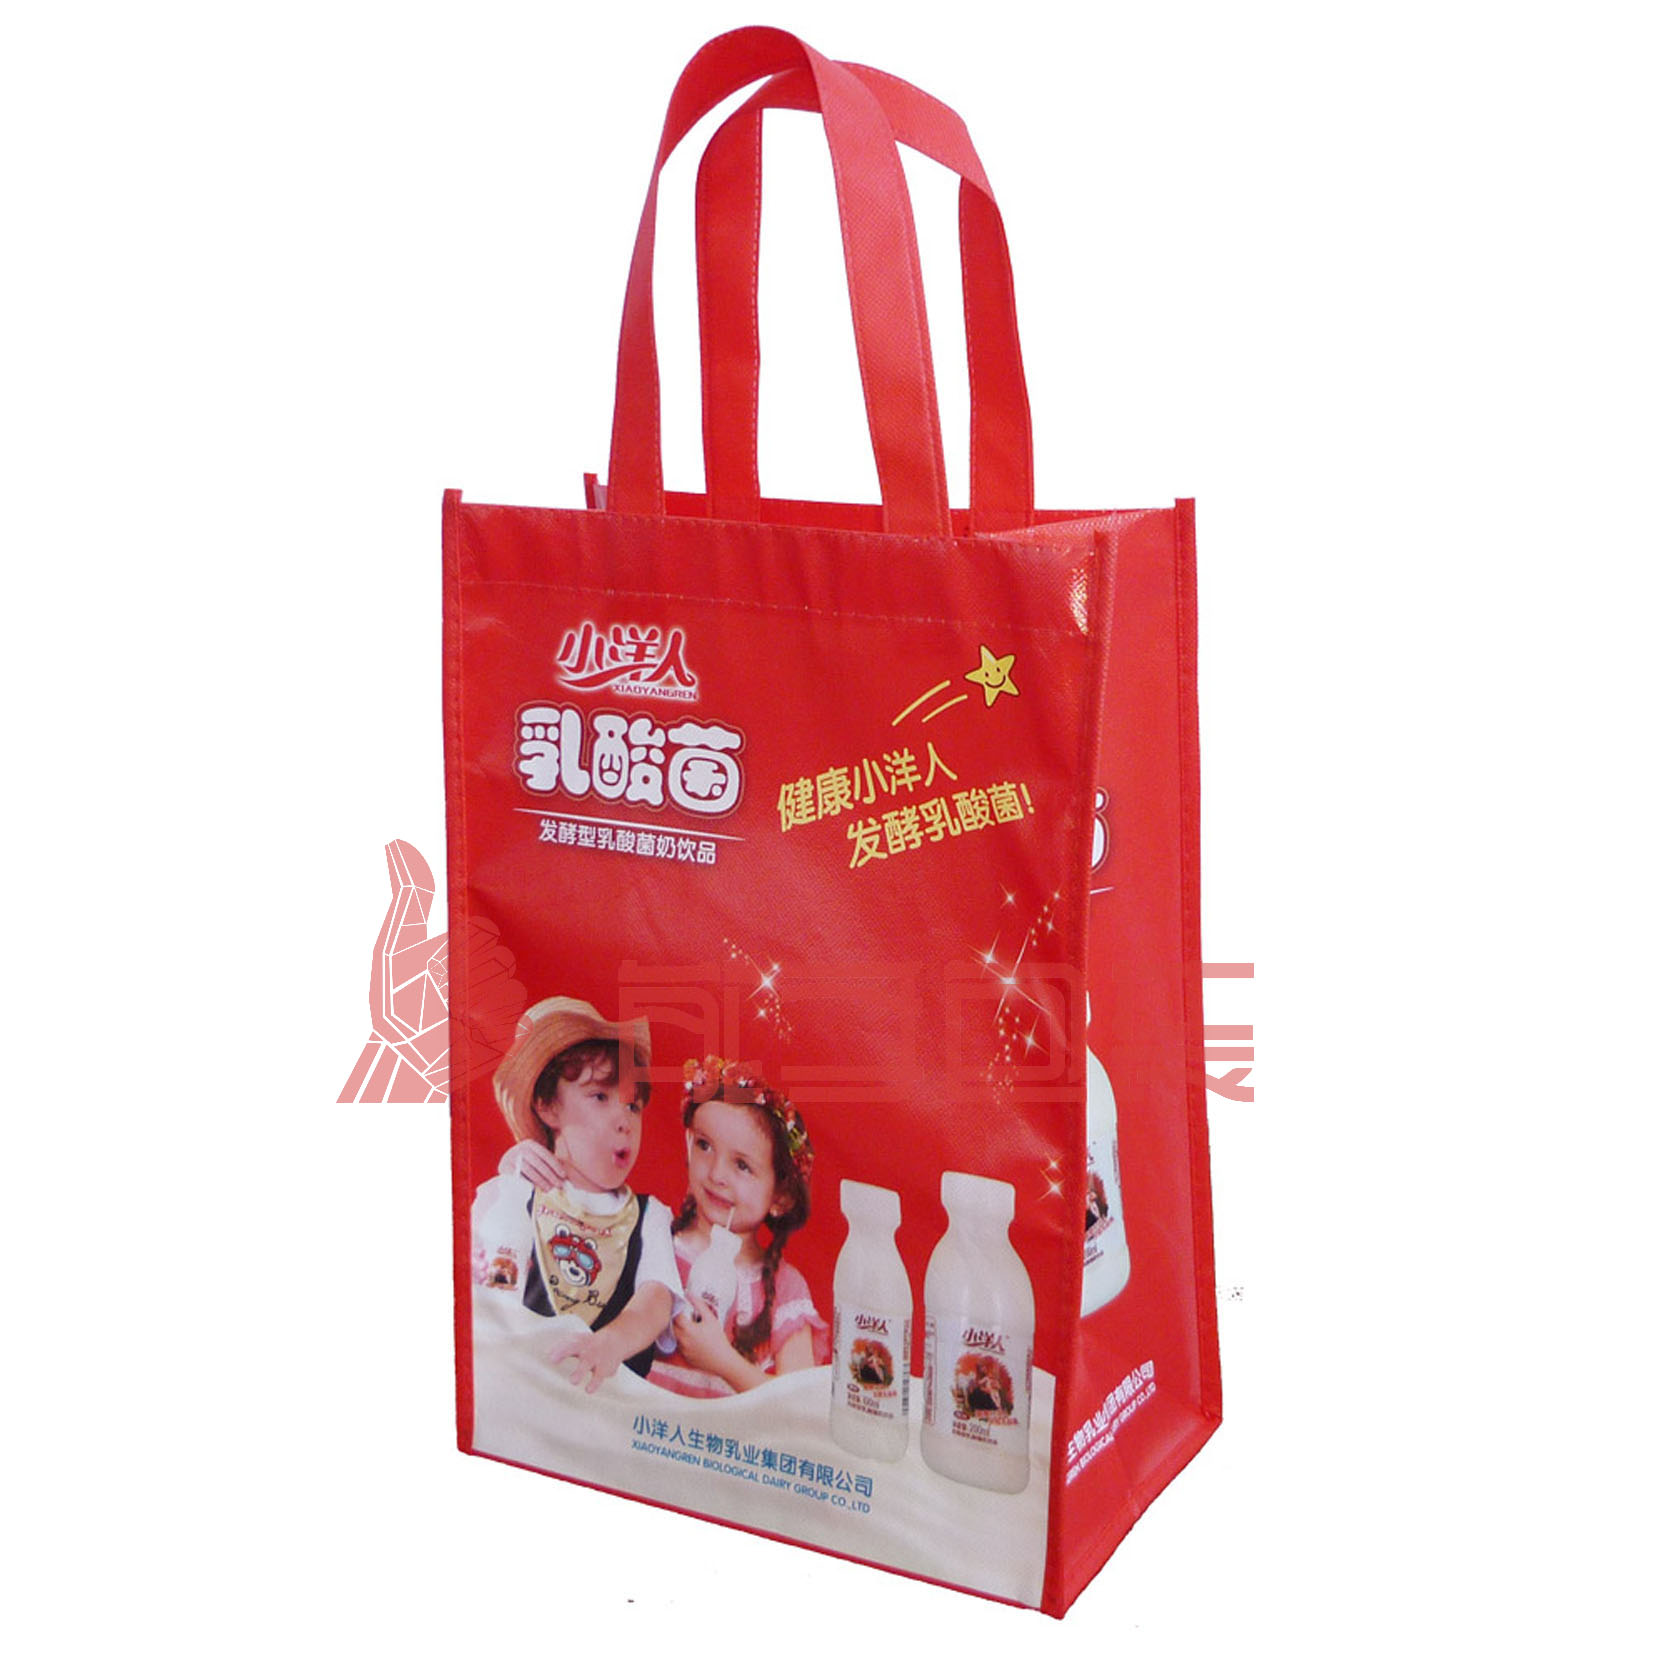 环保袋、无纺布袋供应 广西桂林环保袋印刷公司